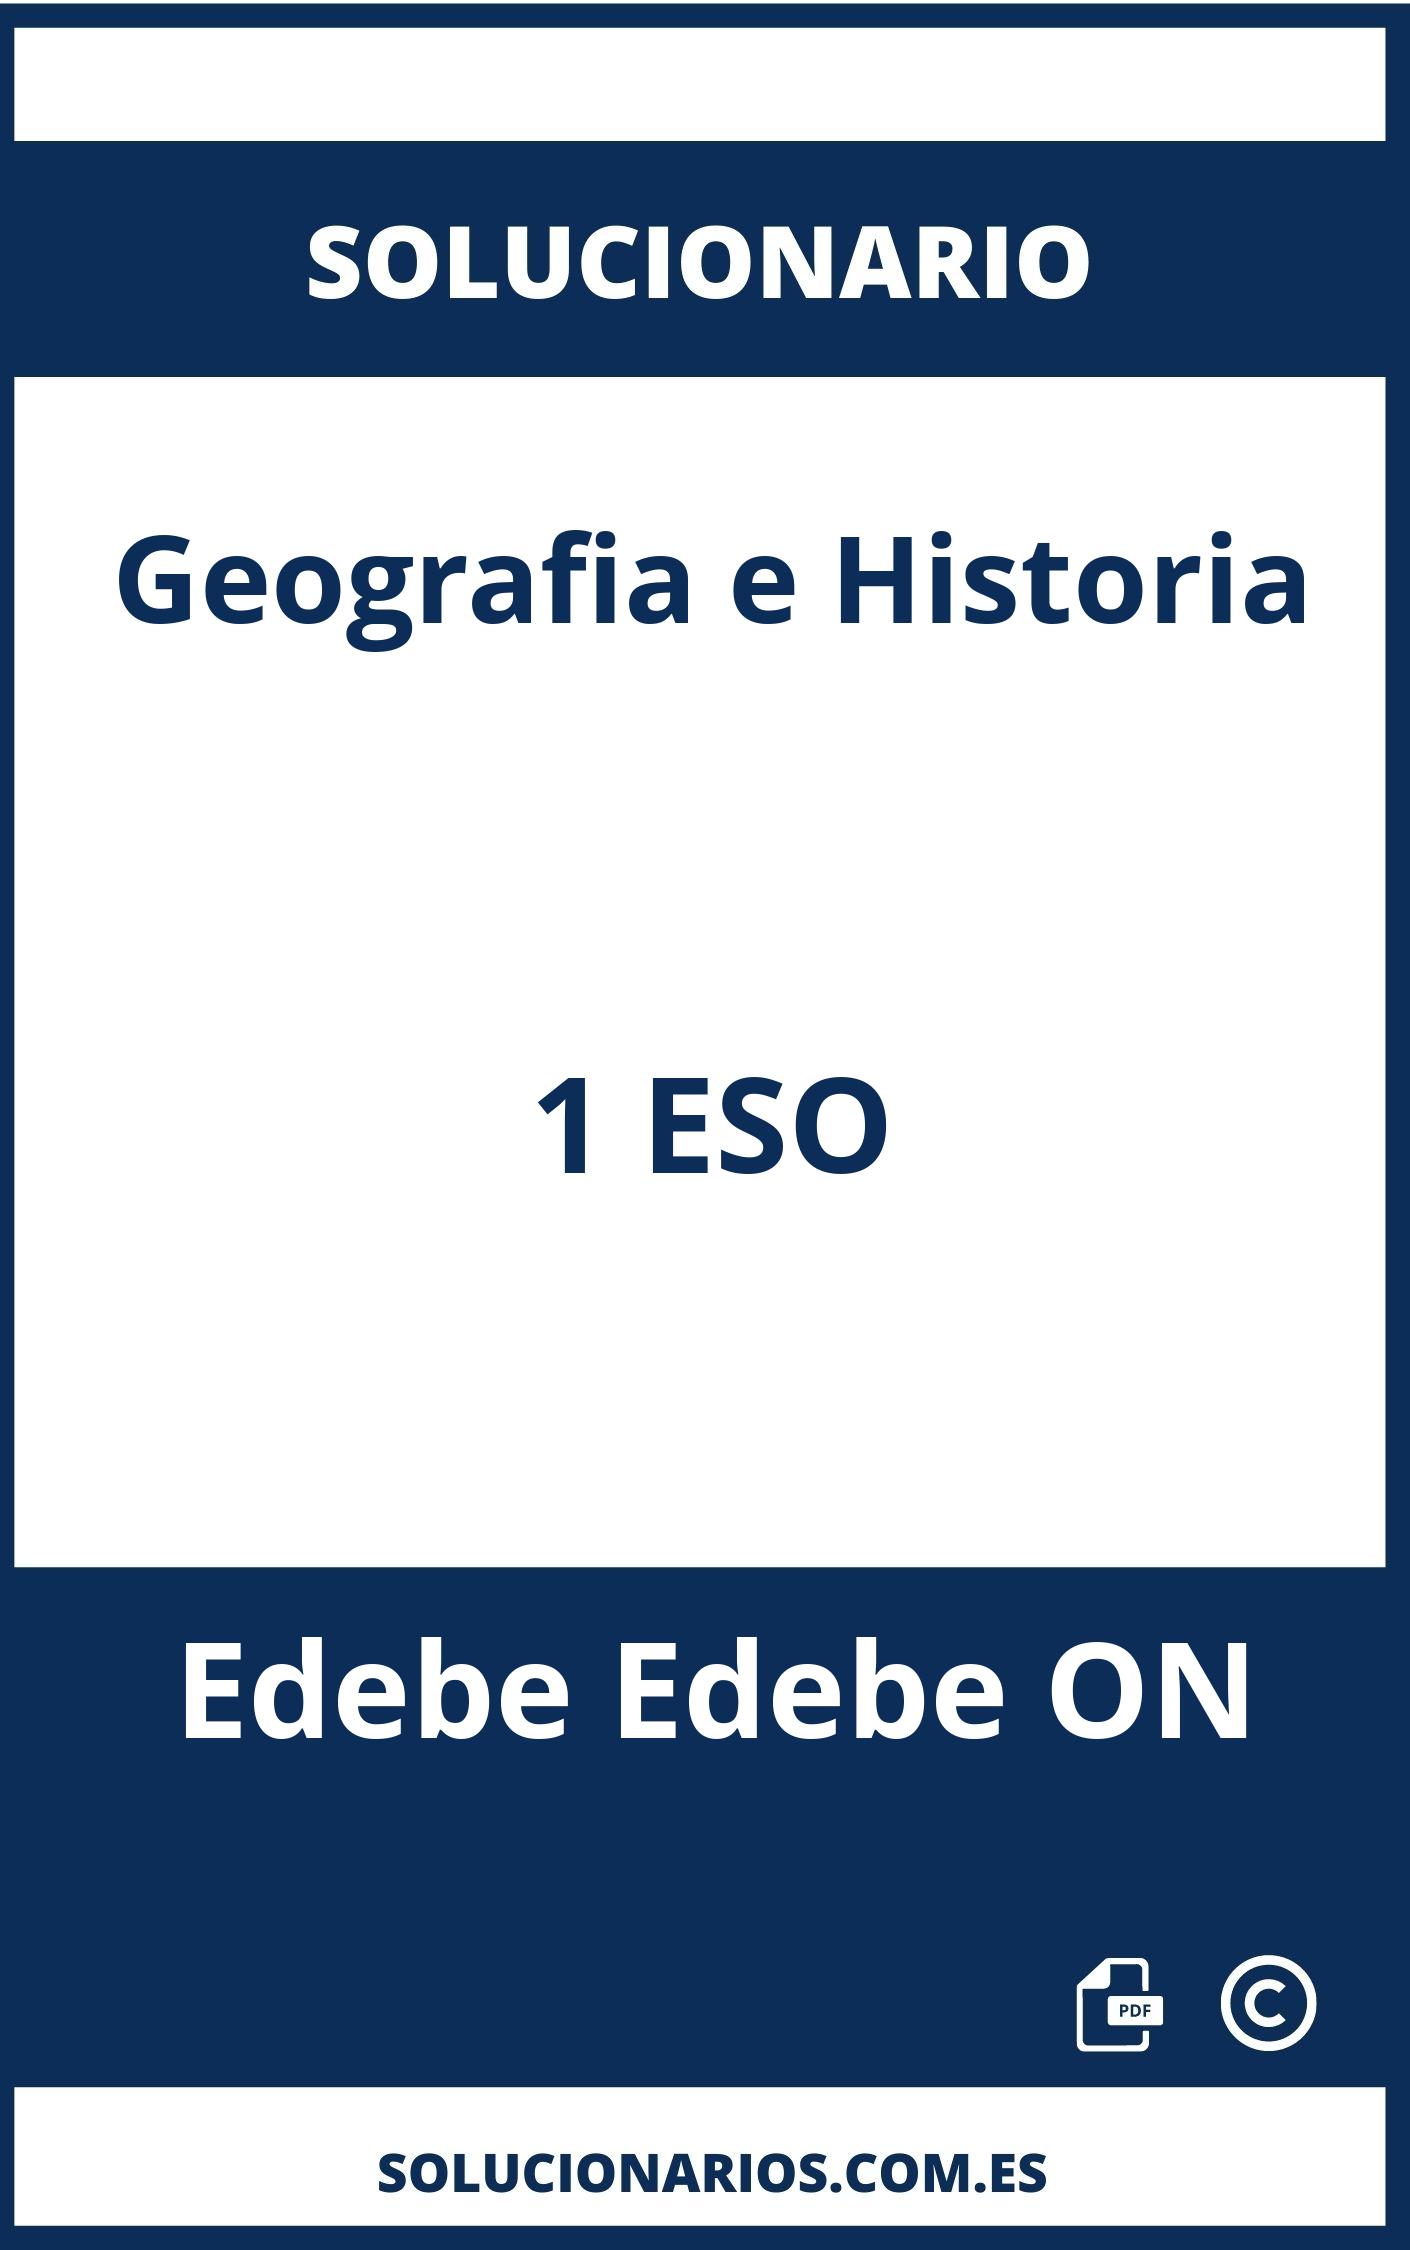 Solucionario Geografia e Historia 1 ESO Edebe Edebe ON